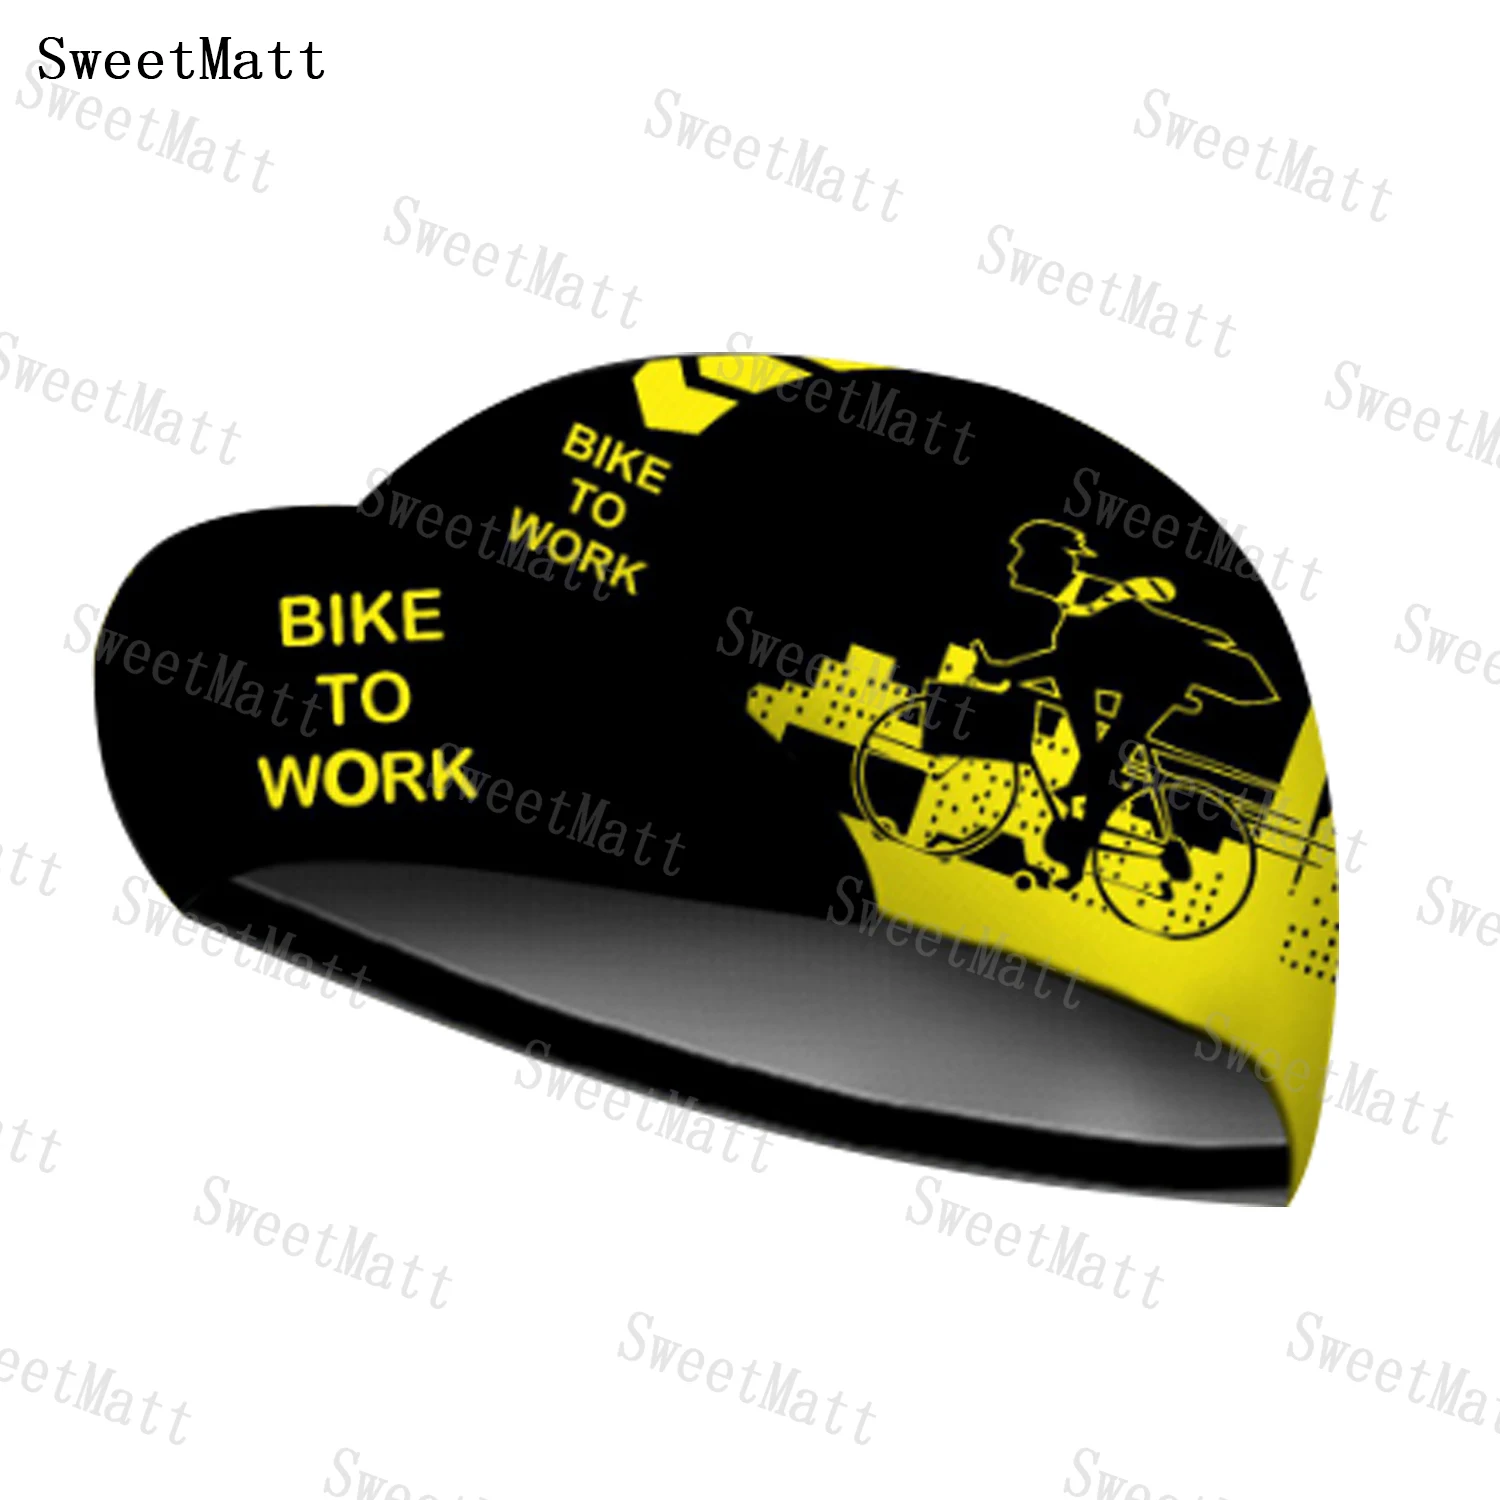 

Шляпа для горного велосипеда Sweetmatt из полиэстера, быстросохнущая дышащая Балаклава с желтыми черными буквами и персонажами